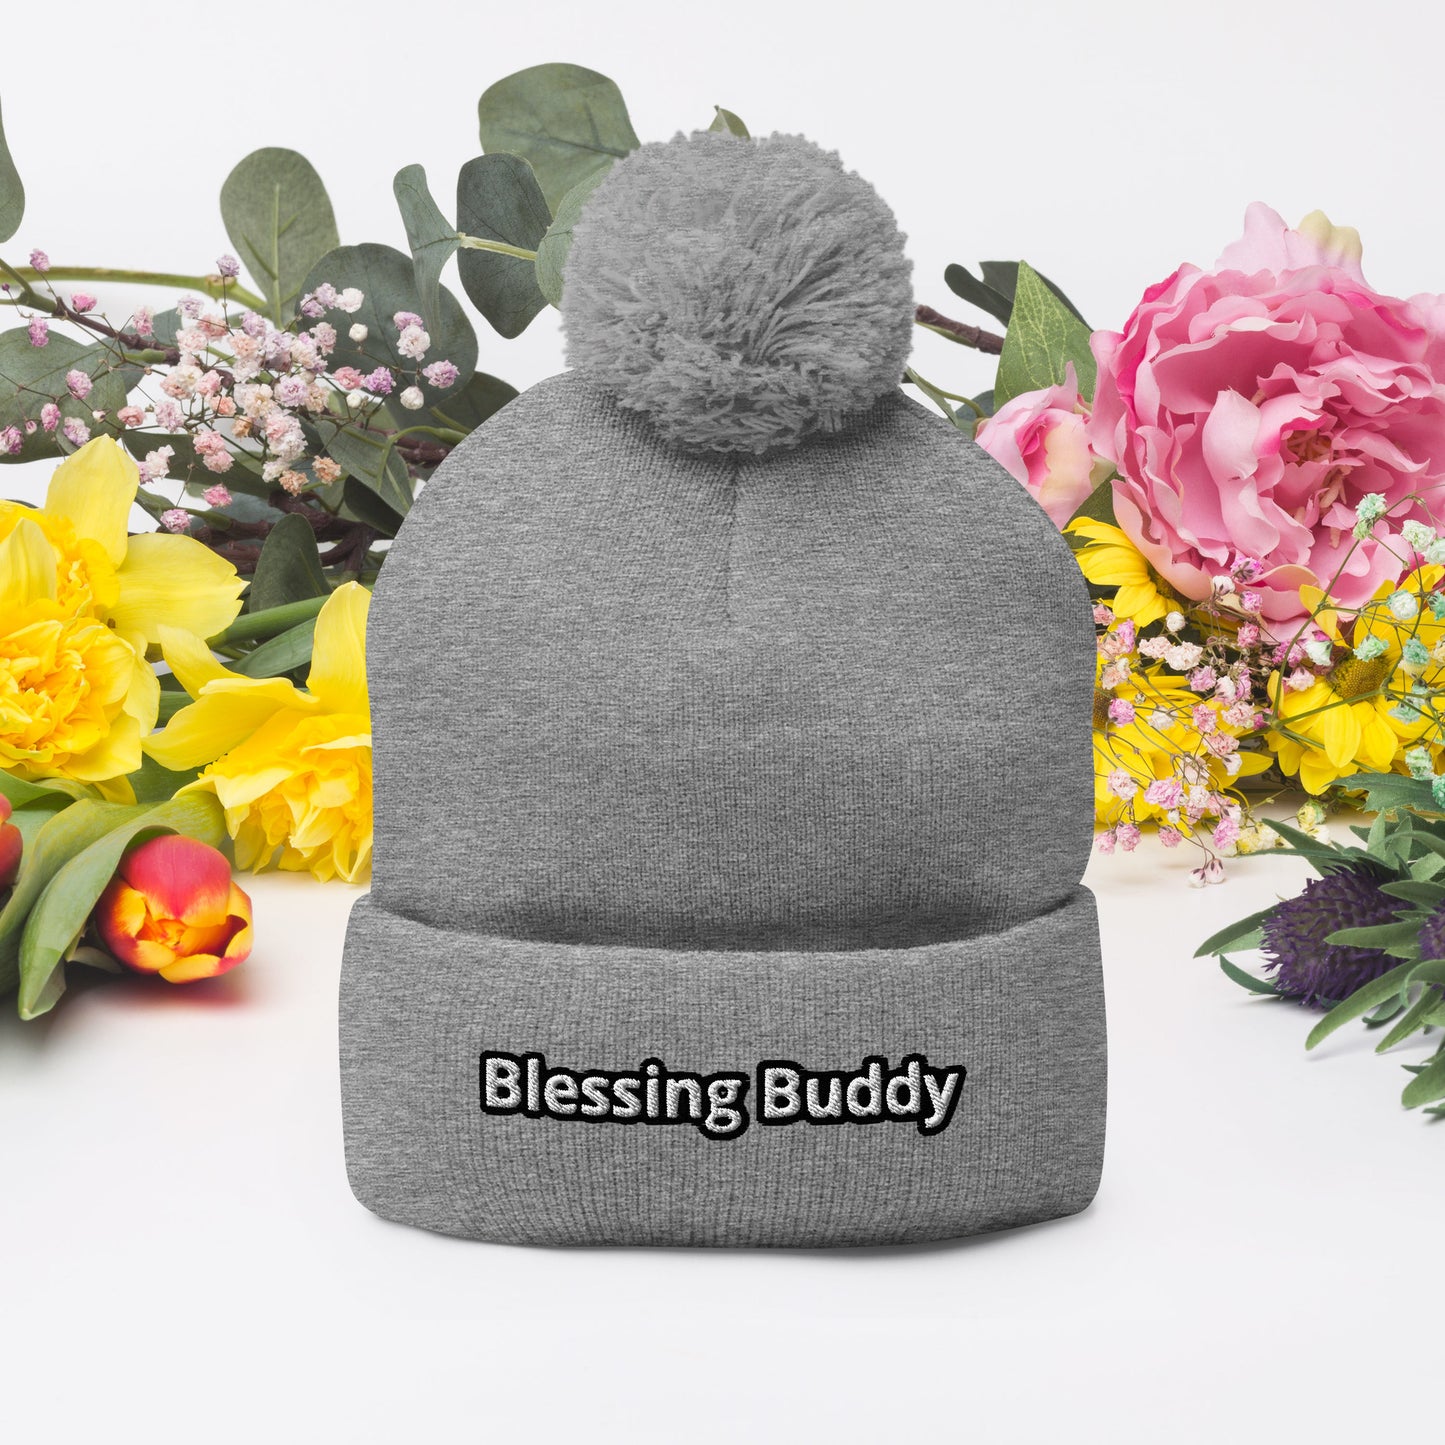 Blessing Buddy Pom-Pom Beanie